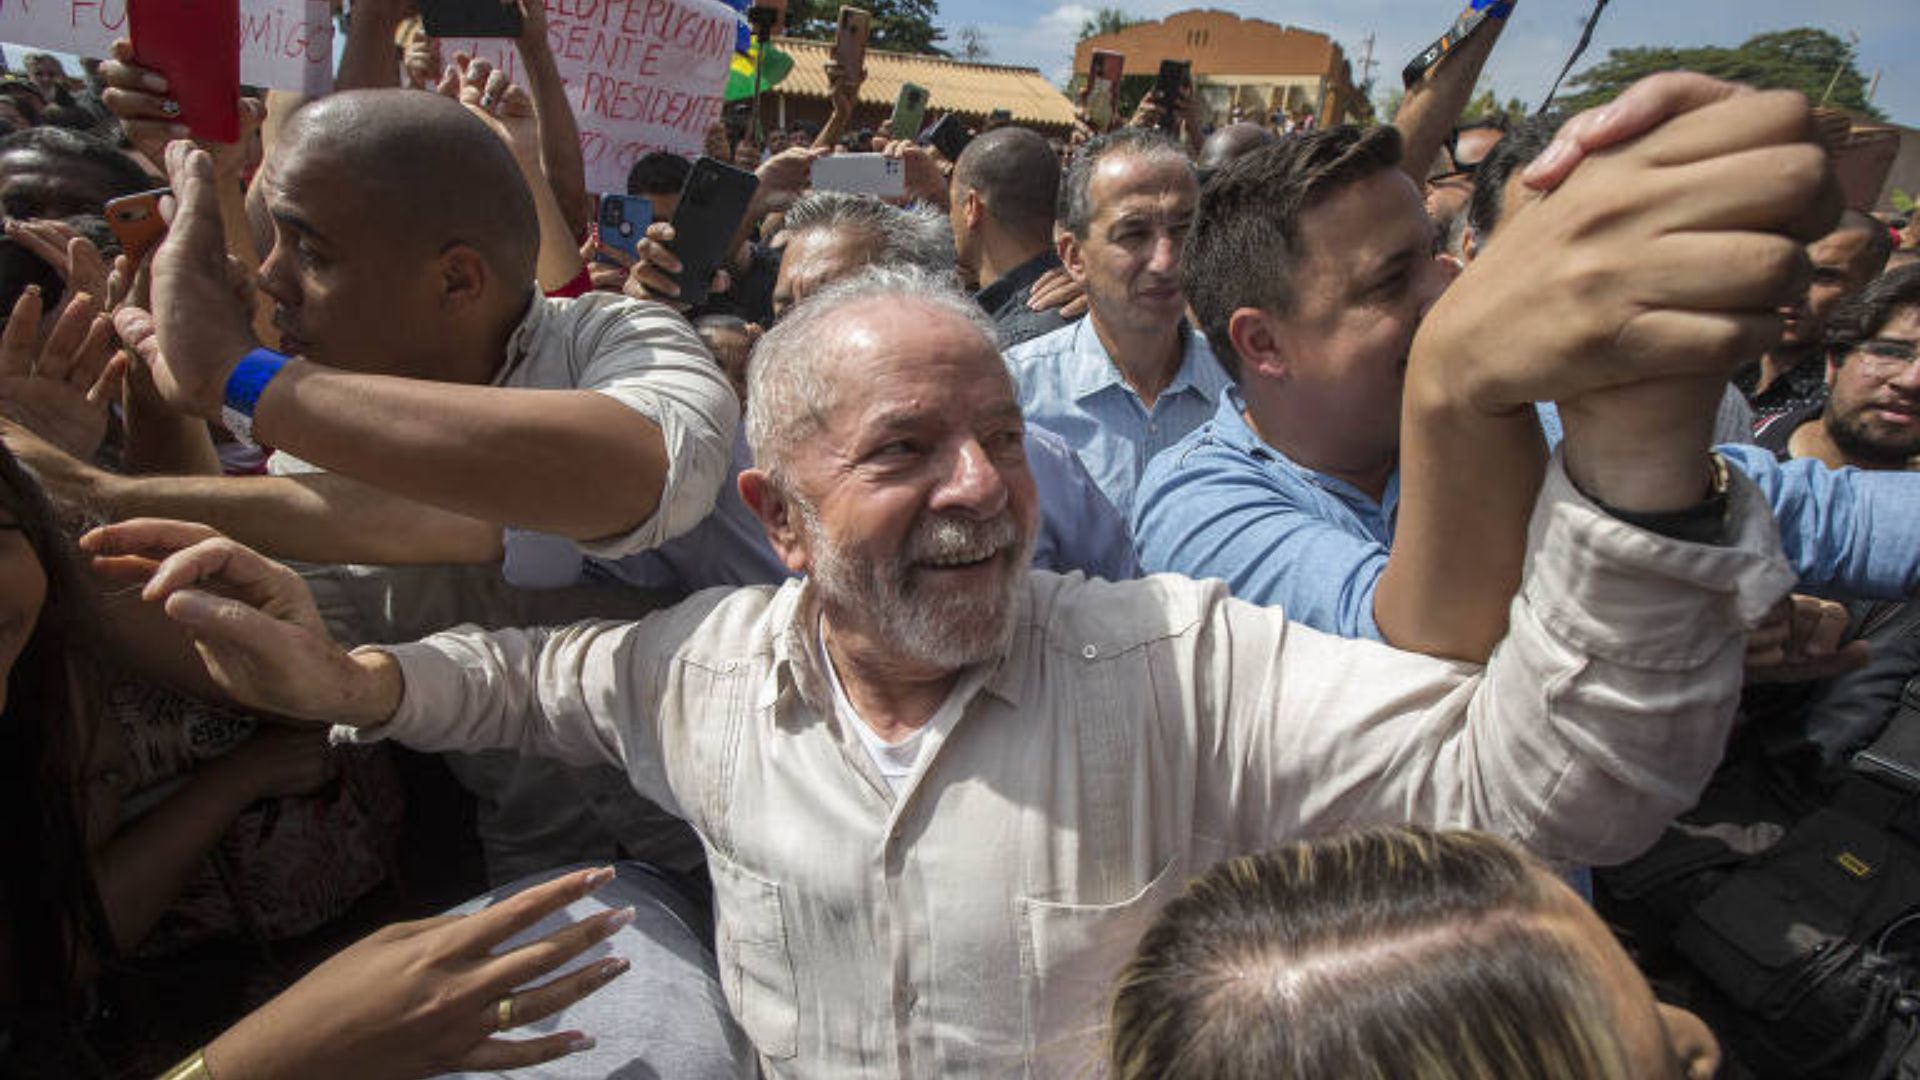 Foto de Lula sorrindo com pessoas o segurando na rua. Ele participa de uma manifestação de esquerda.